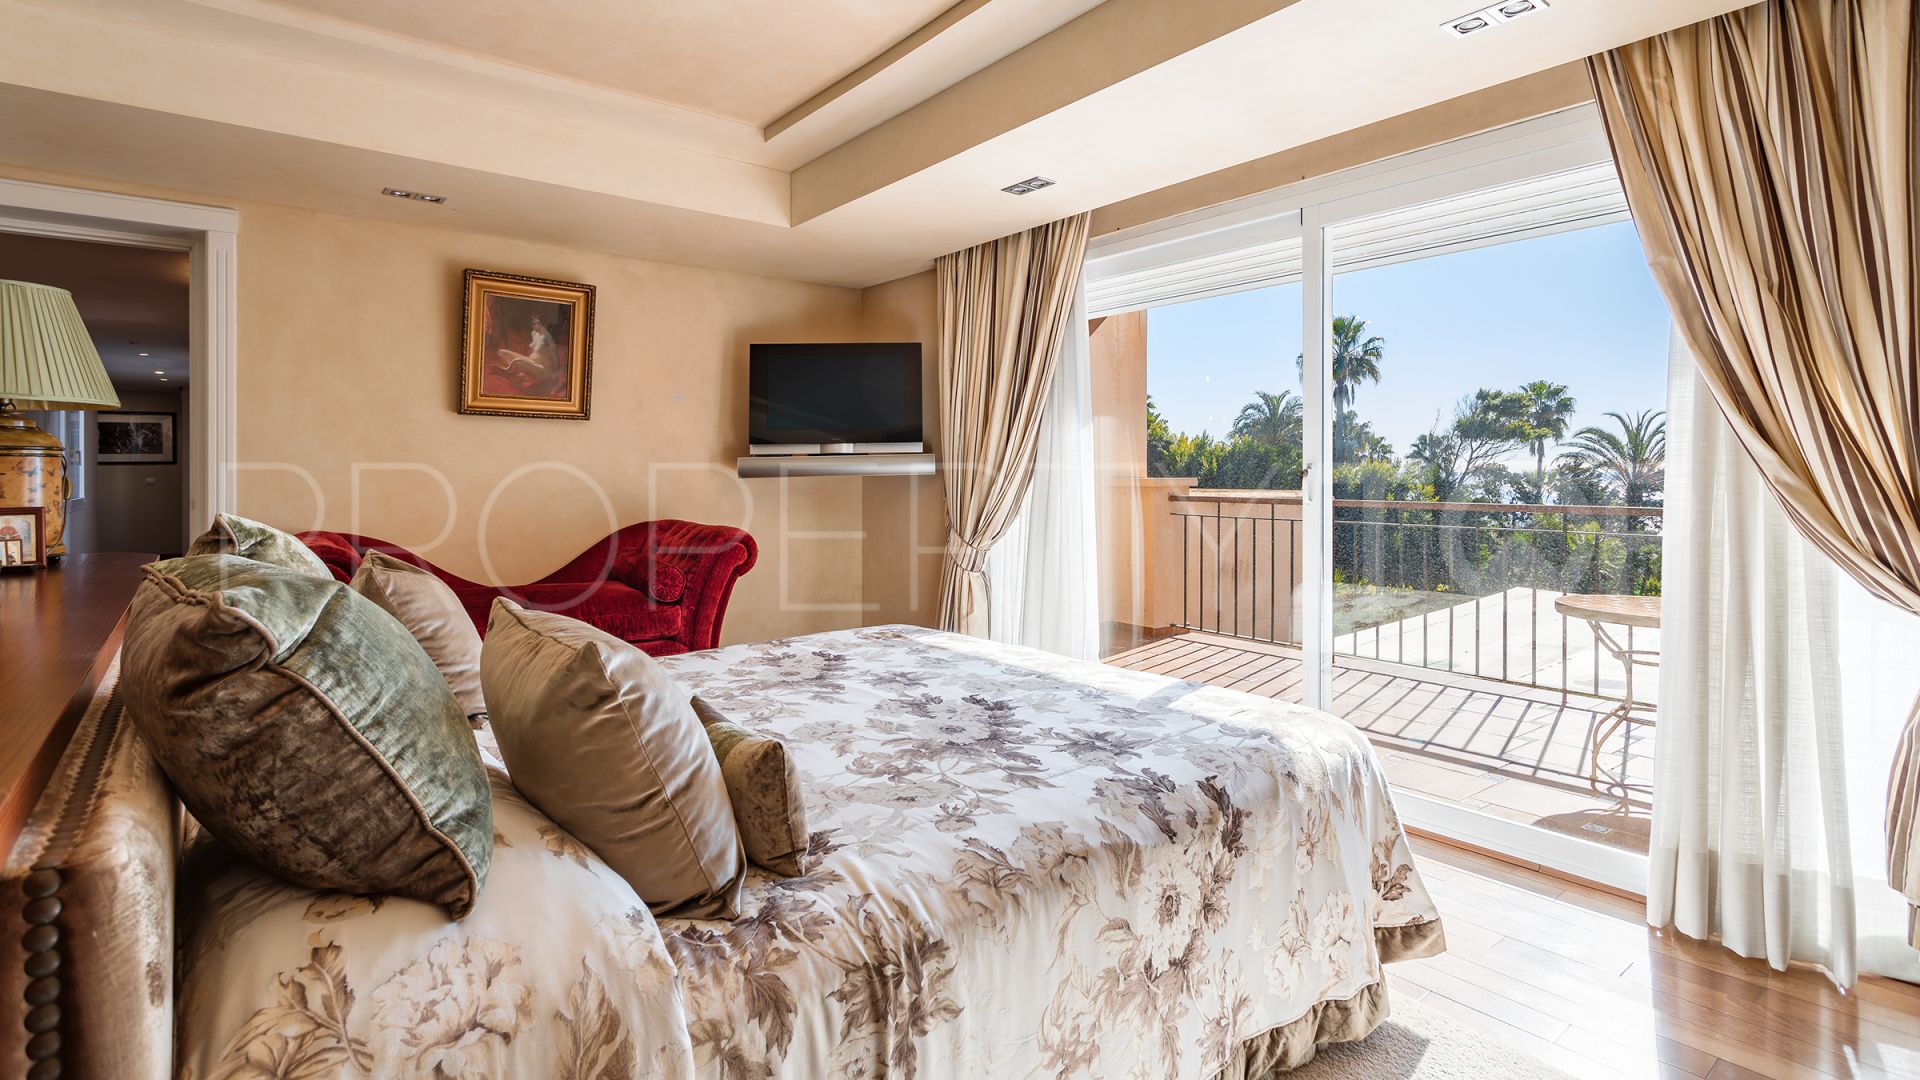 8 bedrooms Hacienda Beach villa for sale